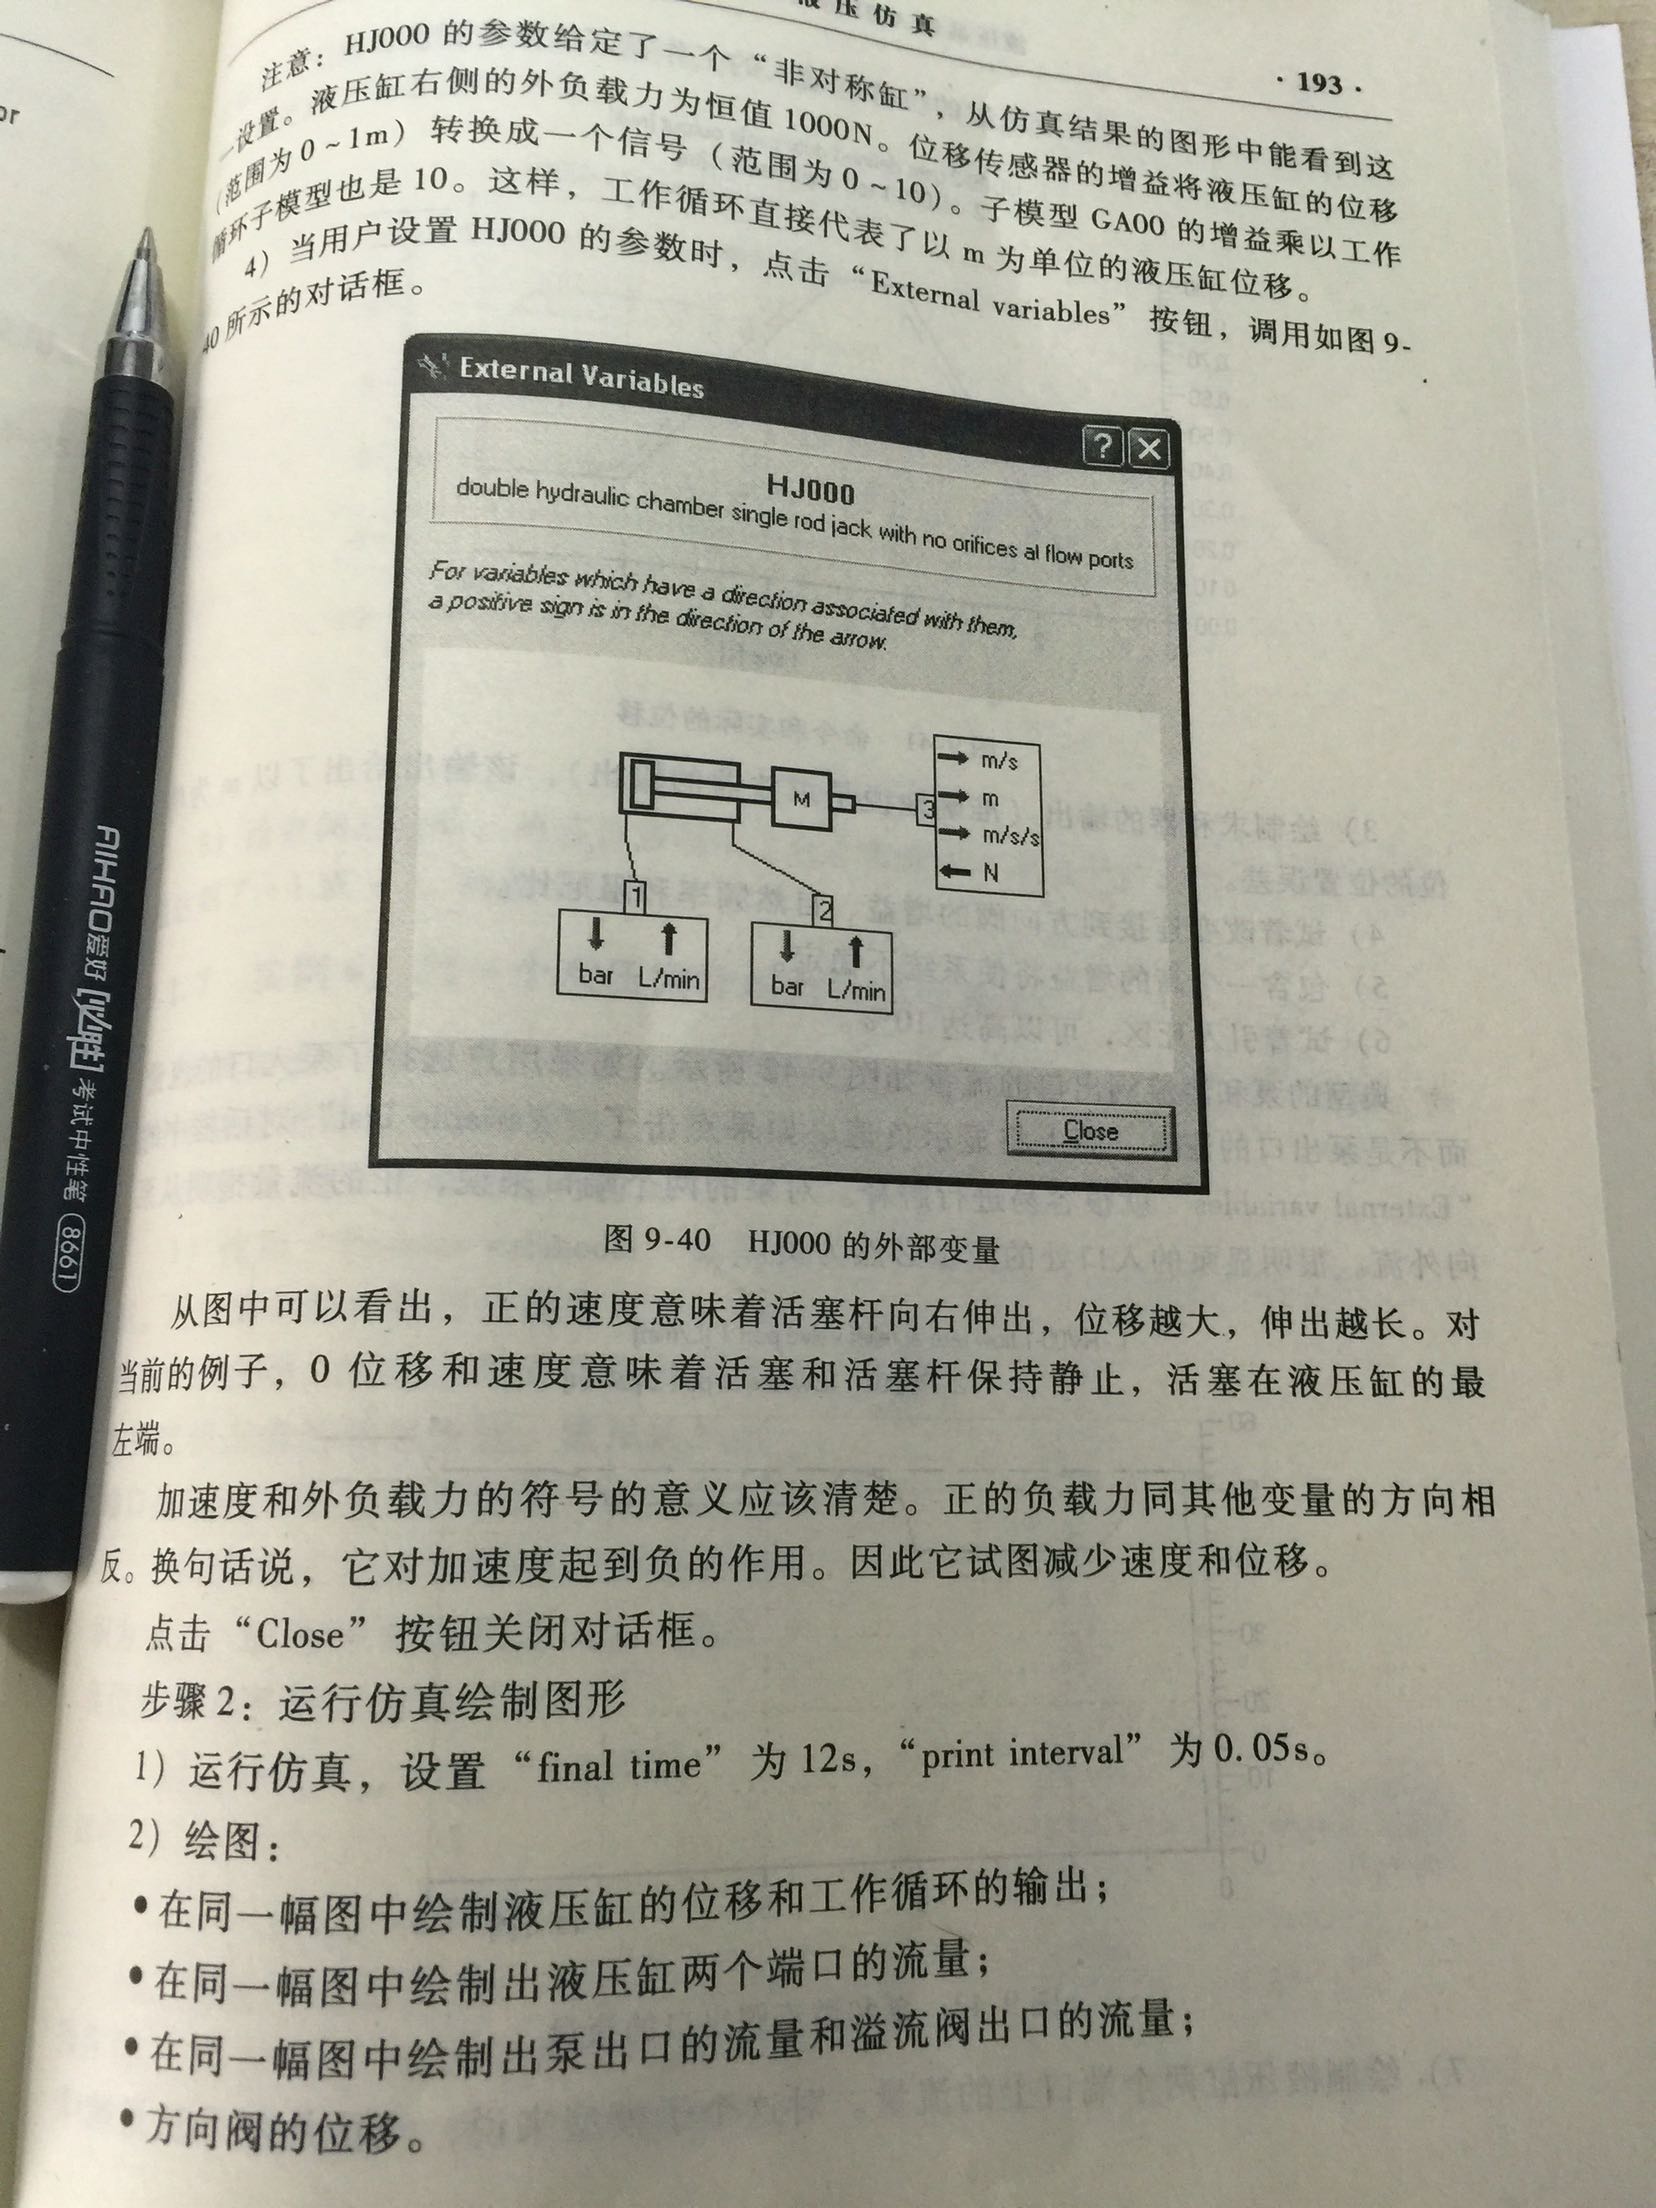 这本书关于液压方面的东西，写的真的不怎么样，有些数据不明确，完全是软件的示例中文版。作者没有好好把实验做了就出书，也是业界垃圾